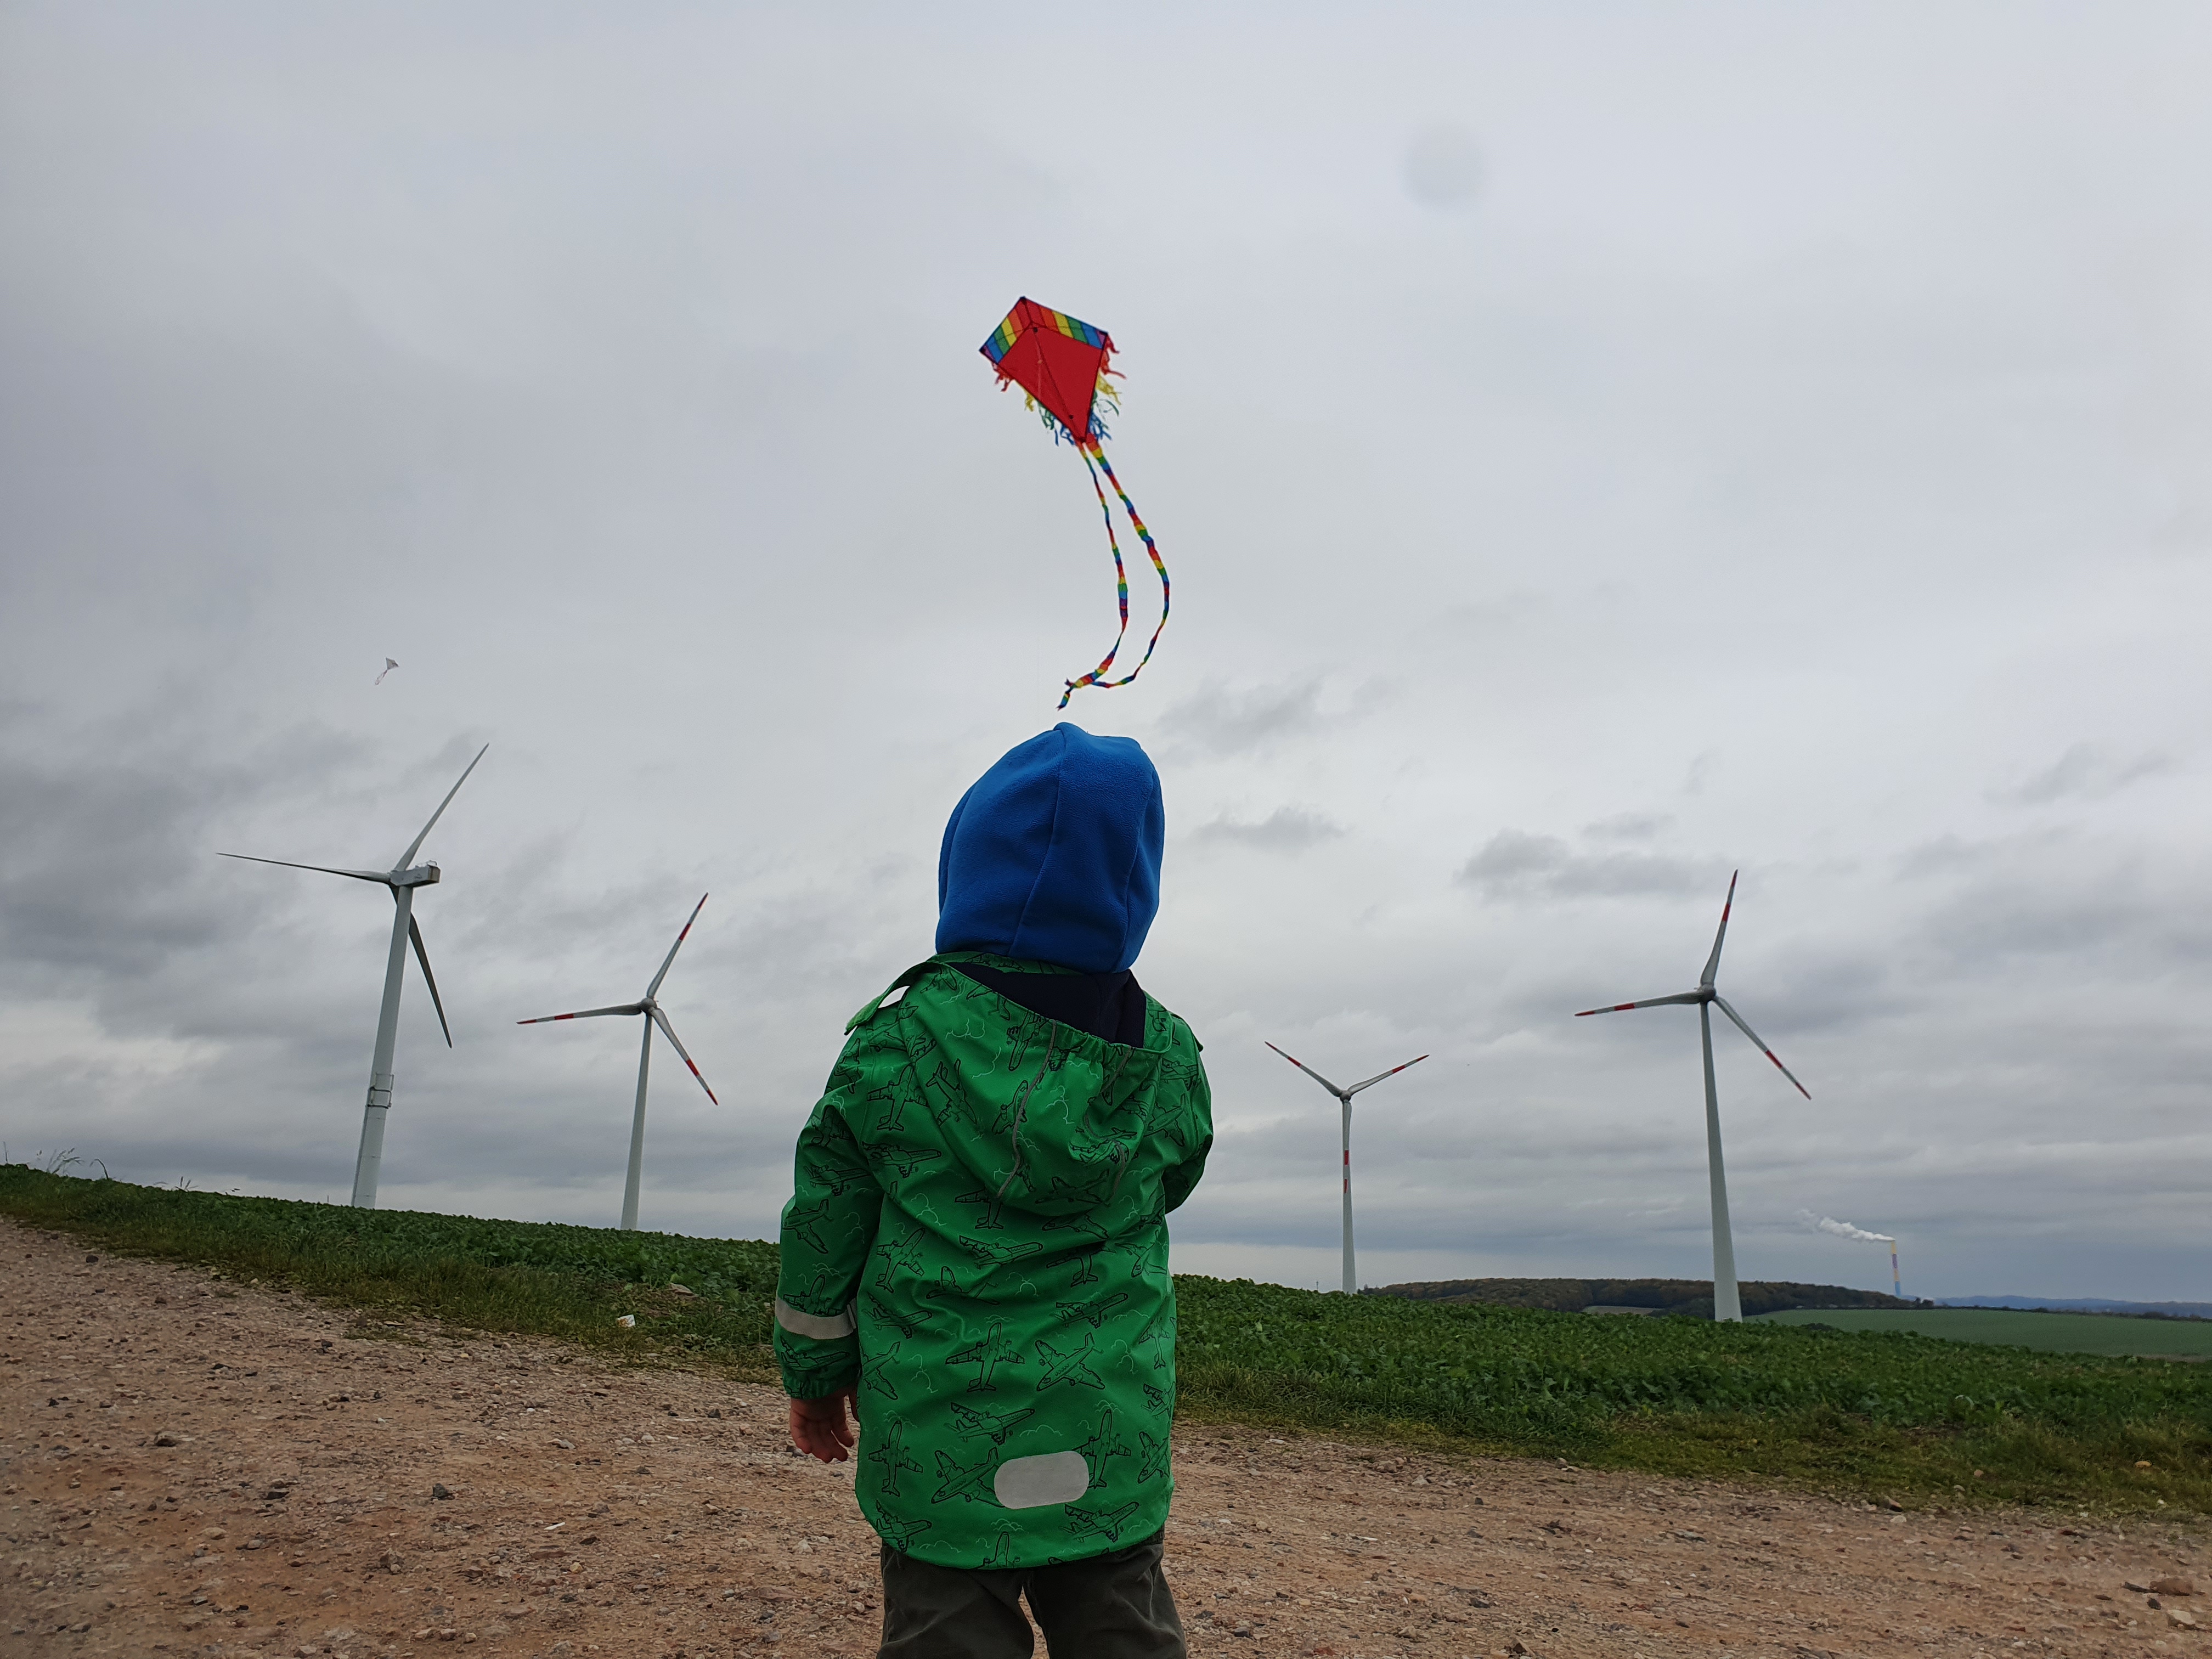 Kind lässt Drachen steigen, im Hintergrund Windräder